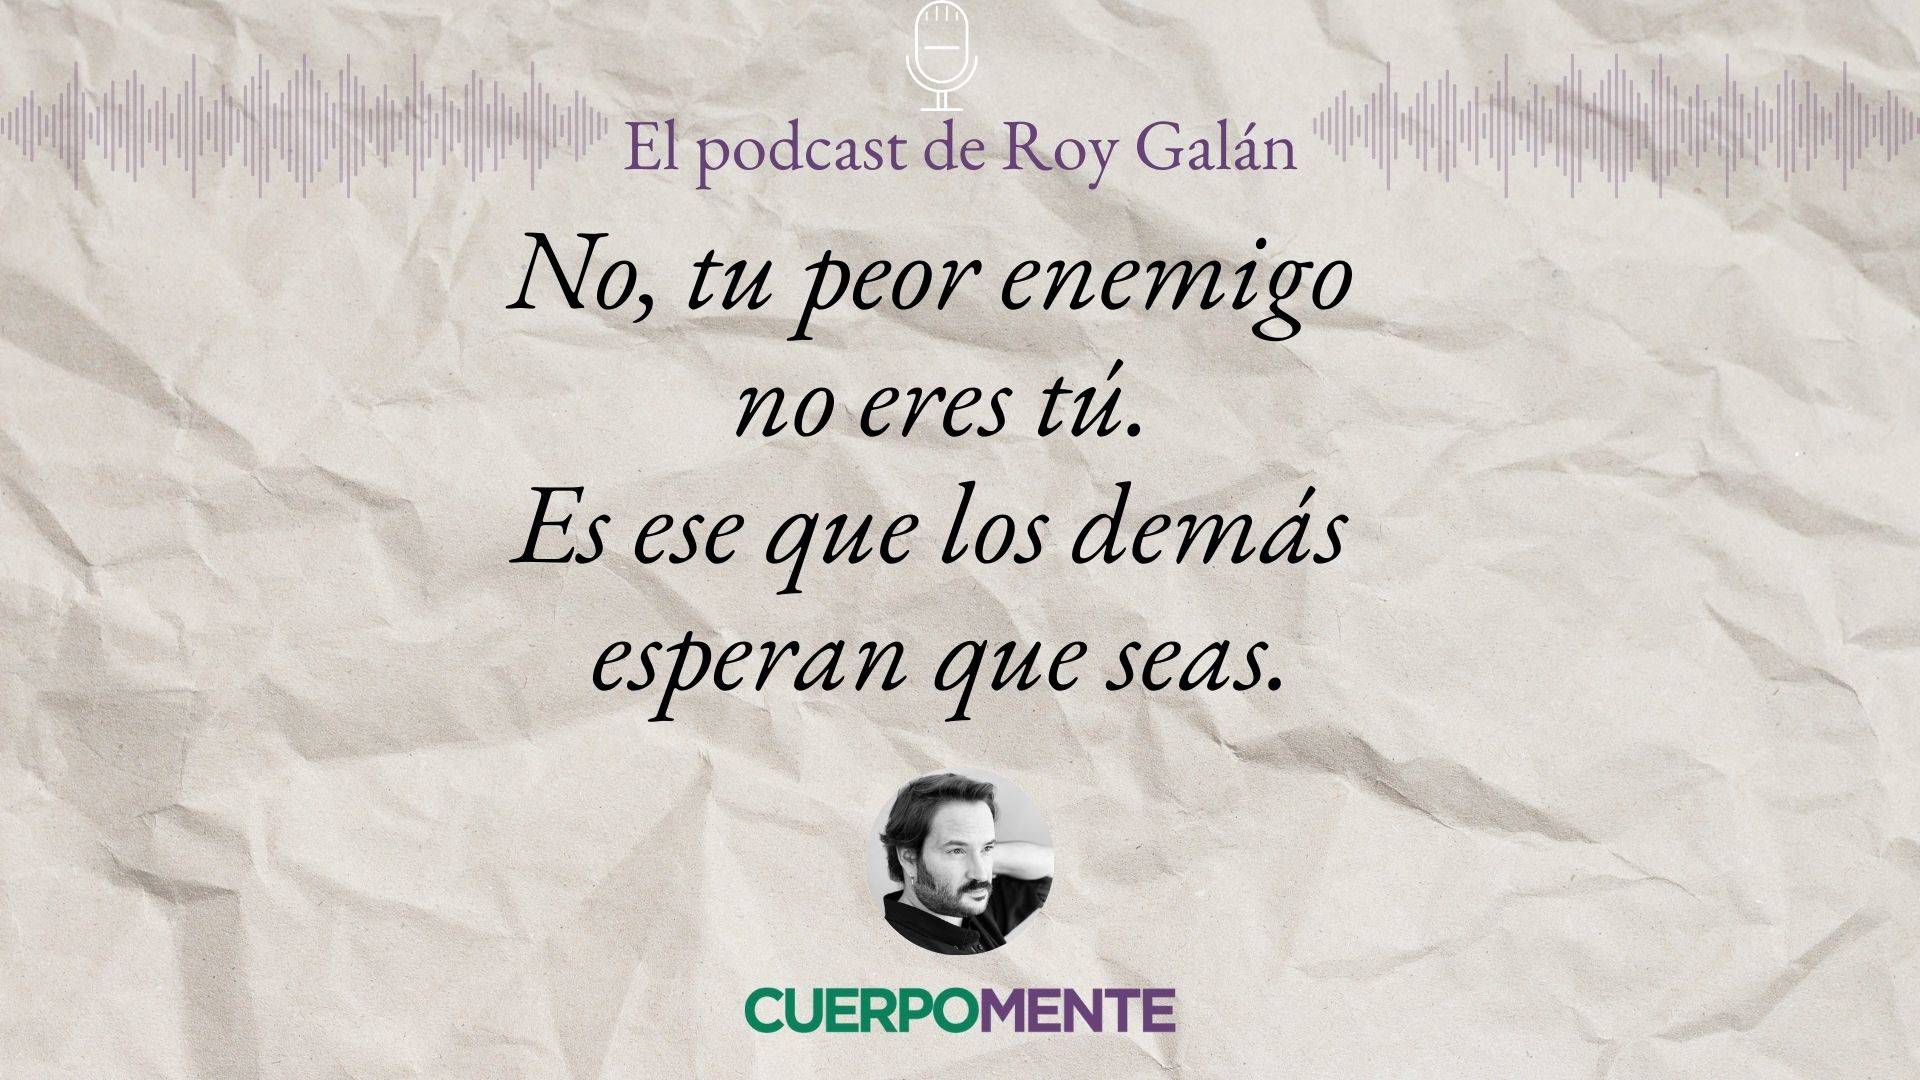 Frases de la vida para reflexionar pronunciadas por Roy Galán (podcast) imagen